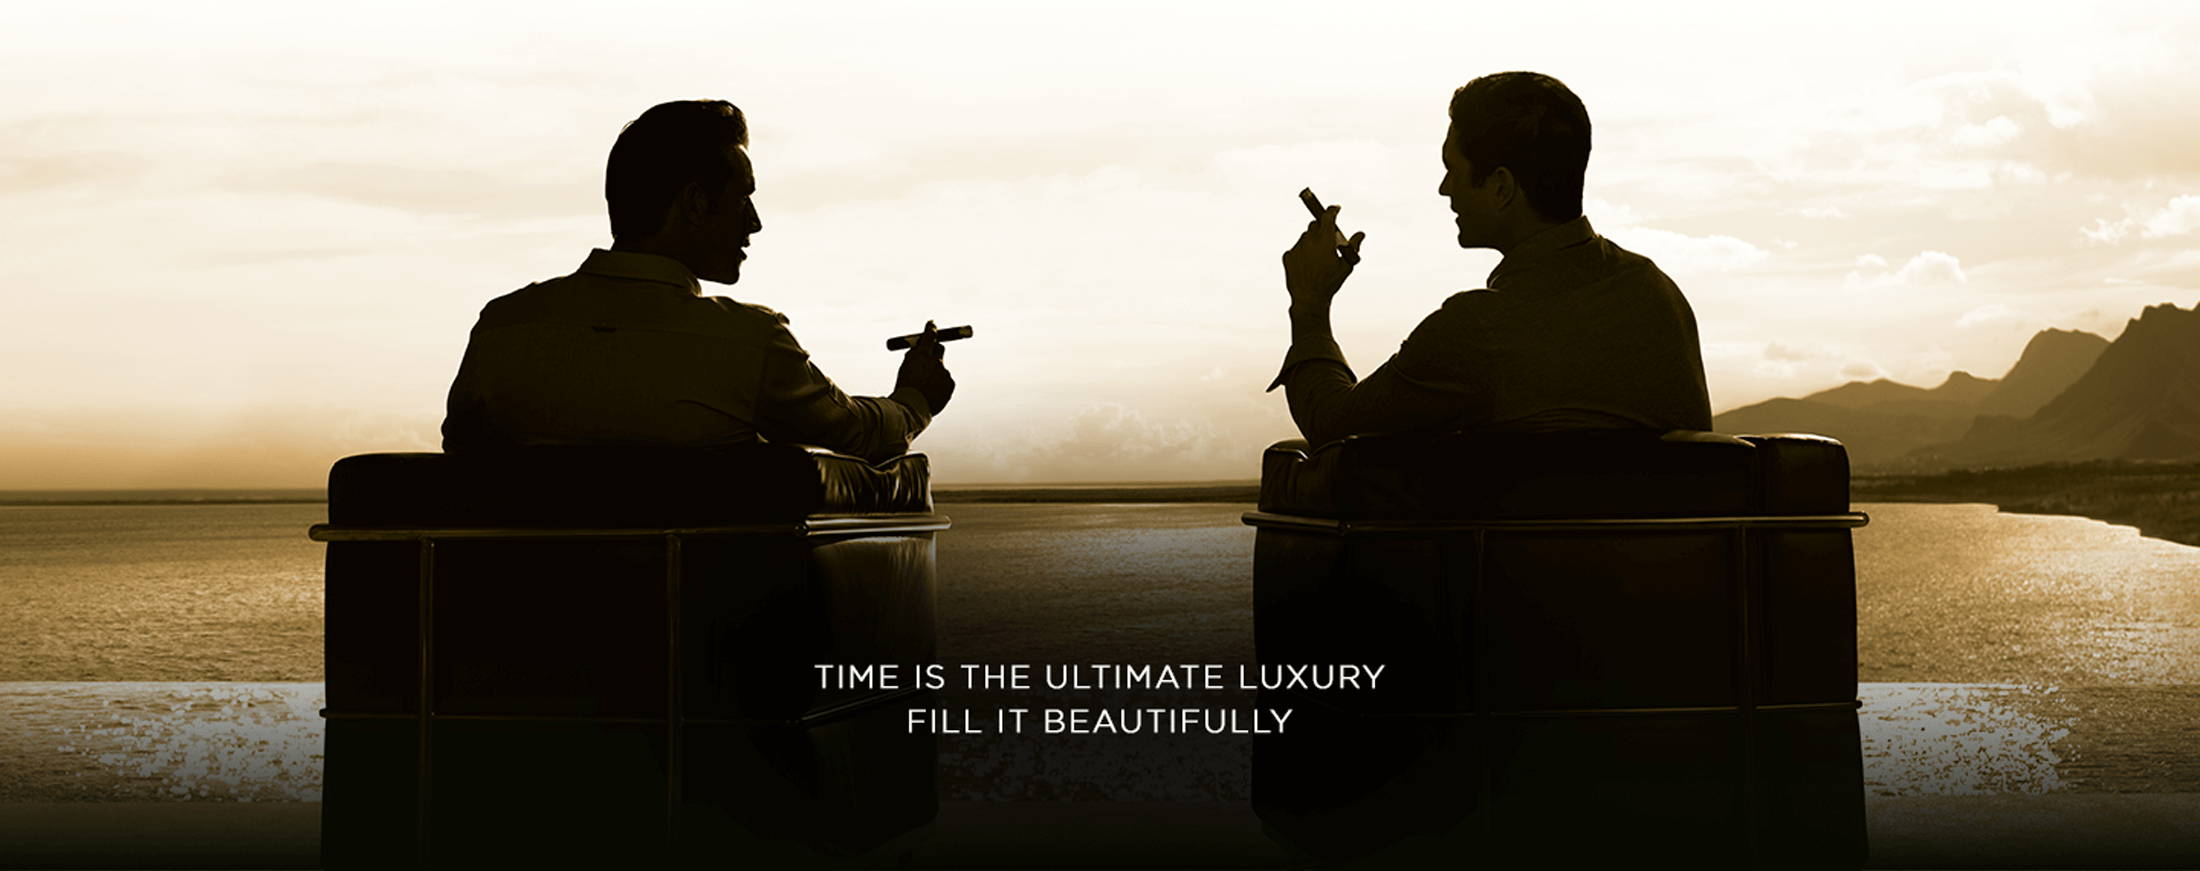 Zwei Zigarrenaficionados geniessen Ihre Davidoff Zigarren sitzend in bequemen Sofas mit Meerblick.